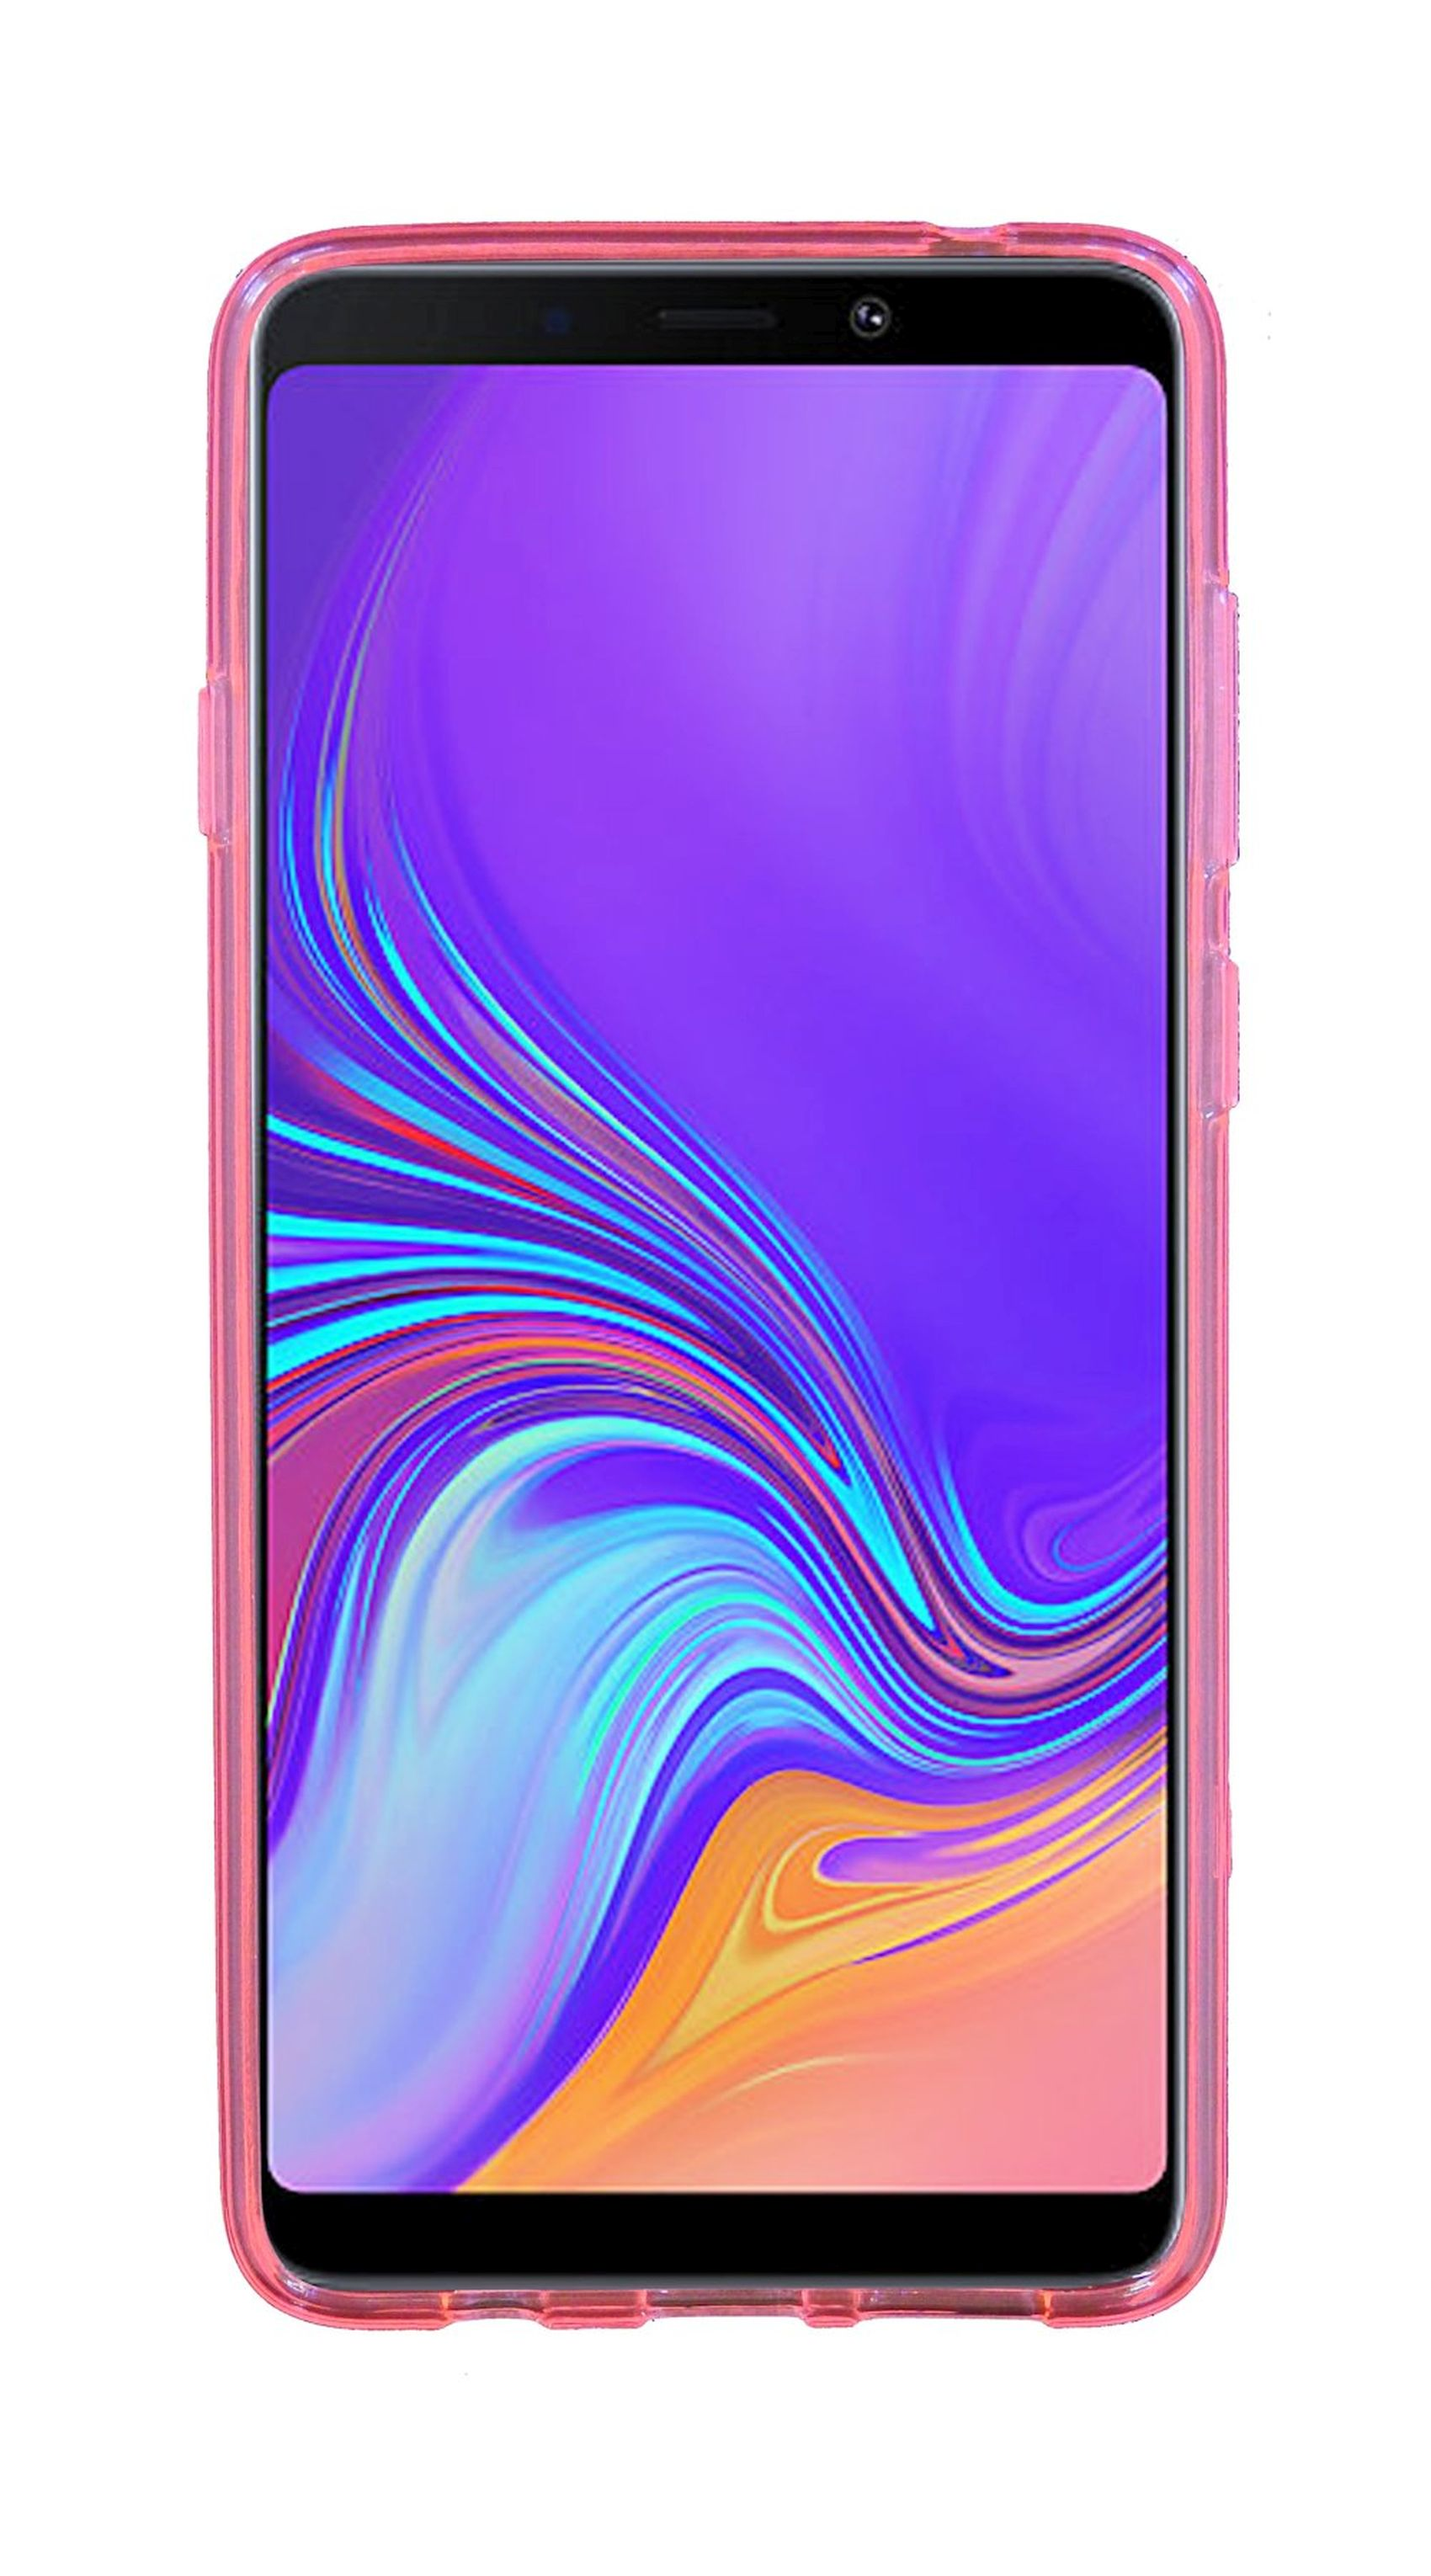 Cover, A9 Rosa Samsung, 2018, S-Line Galaxy Bumper, COFI